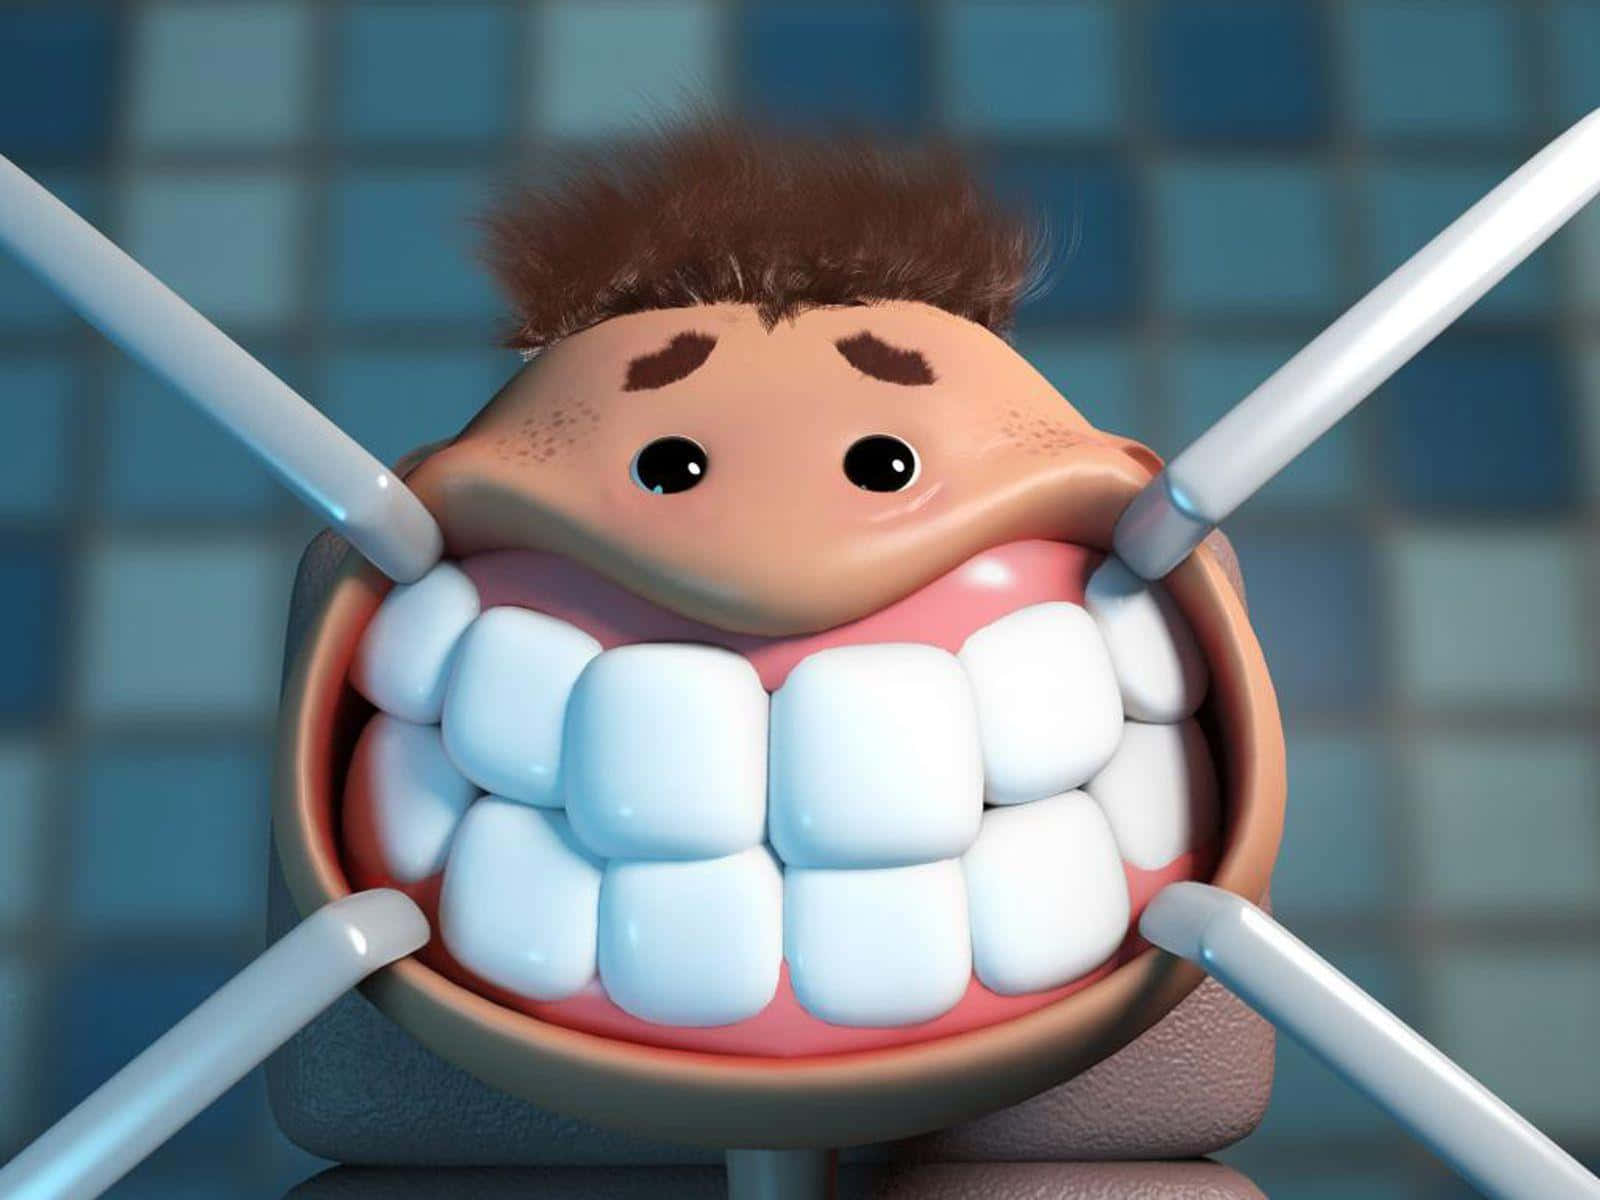 Dentist Background